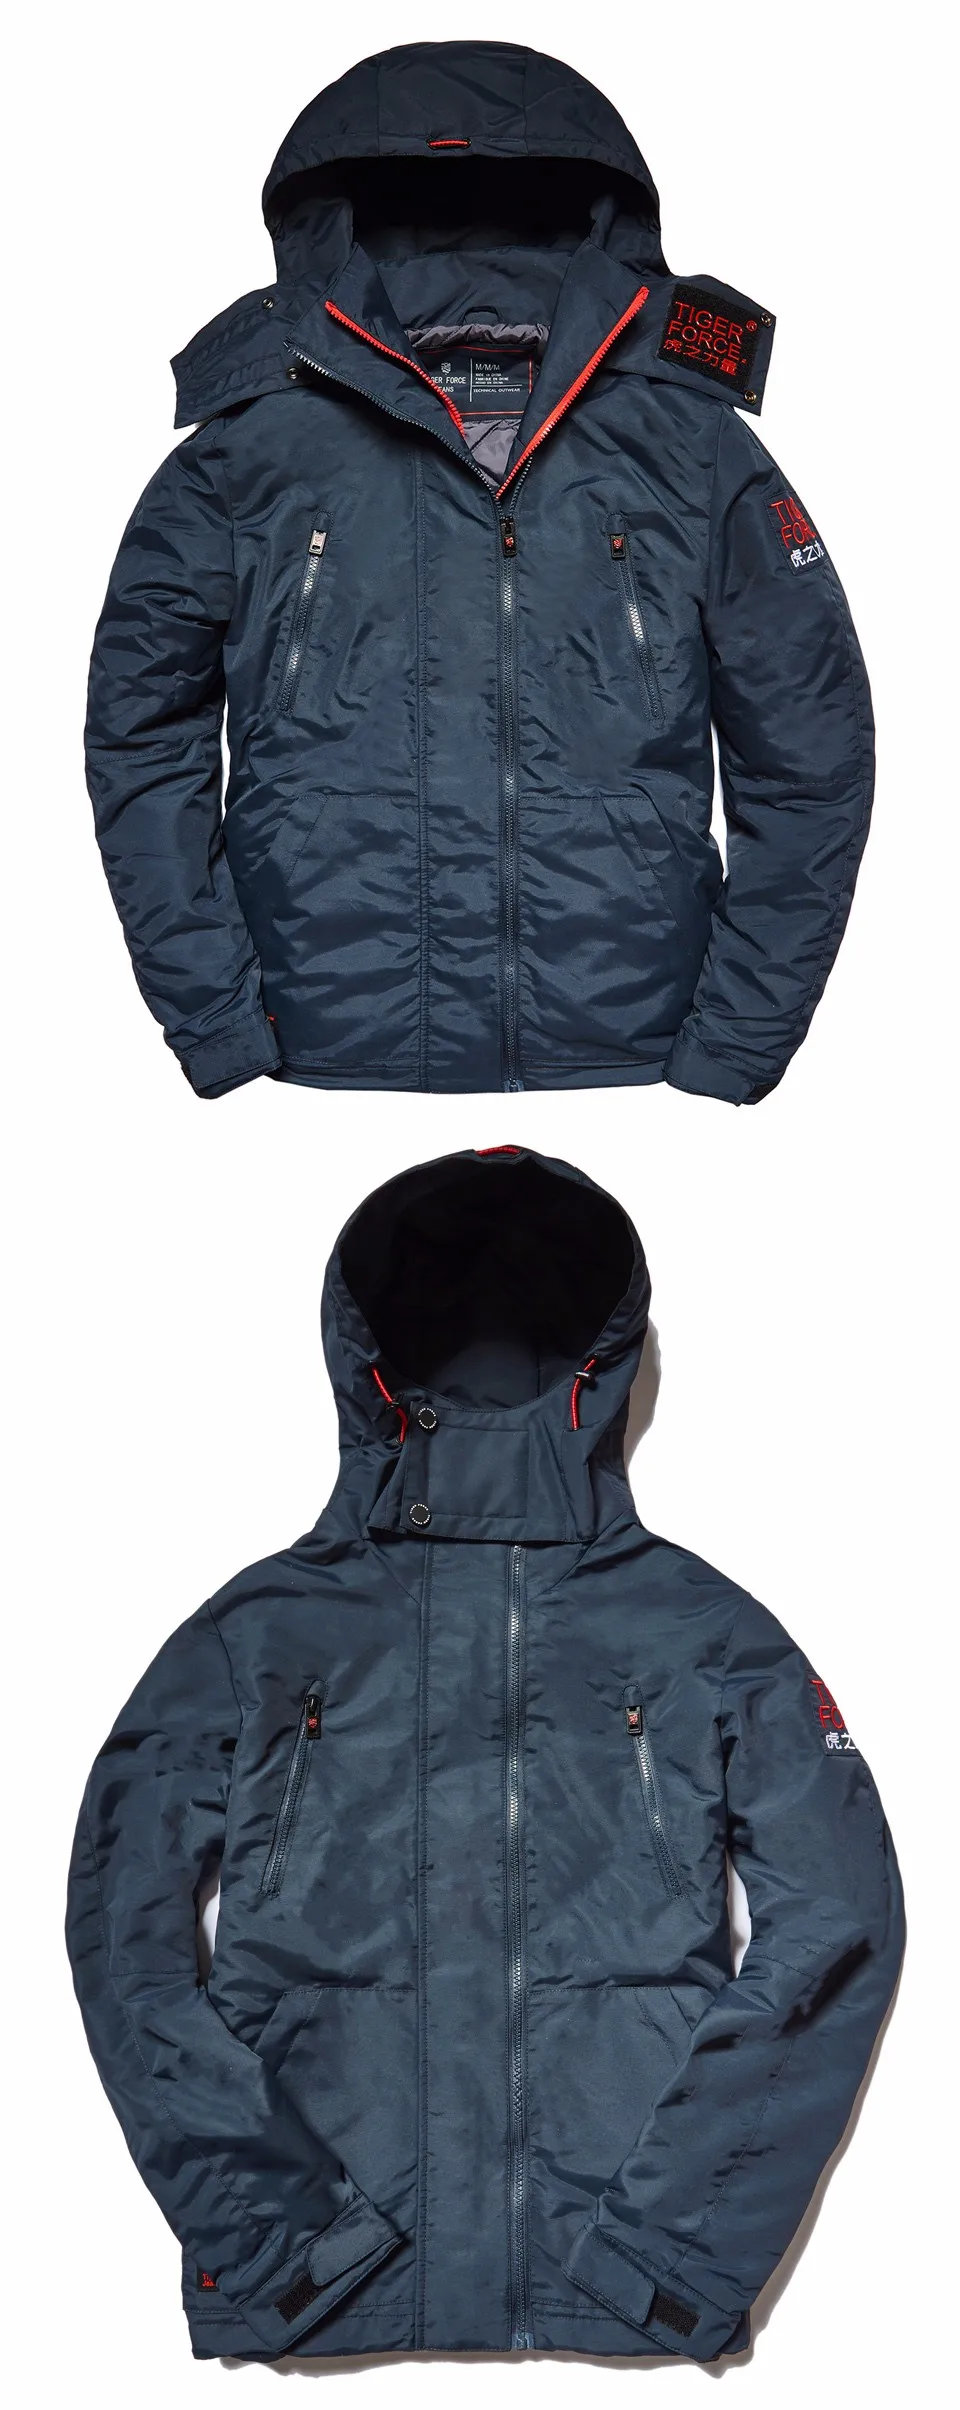 Сила тигра мужские куртки весенние куртки с хлопковой подкладкой куртка с капюшоном водонепроницаемое пальто ветровка мужская верхняя одежда